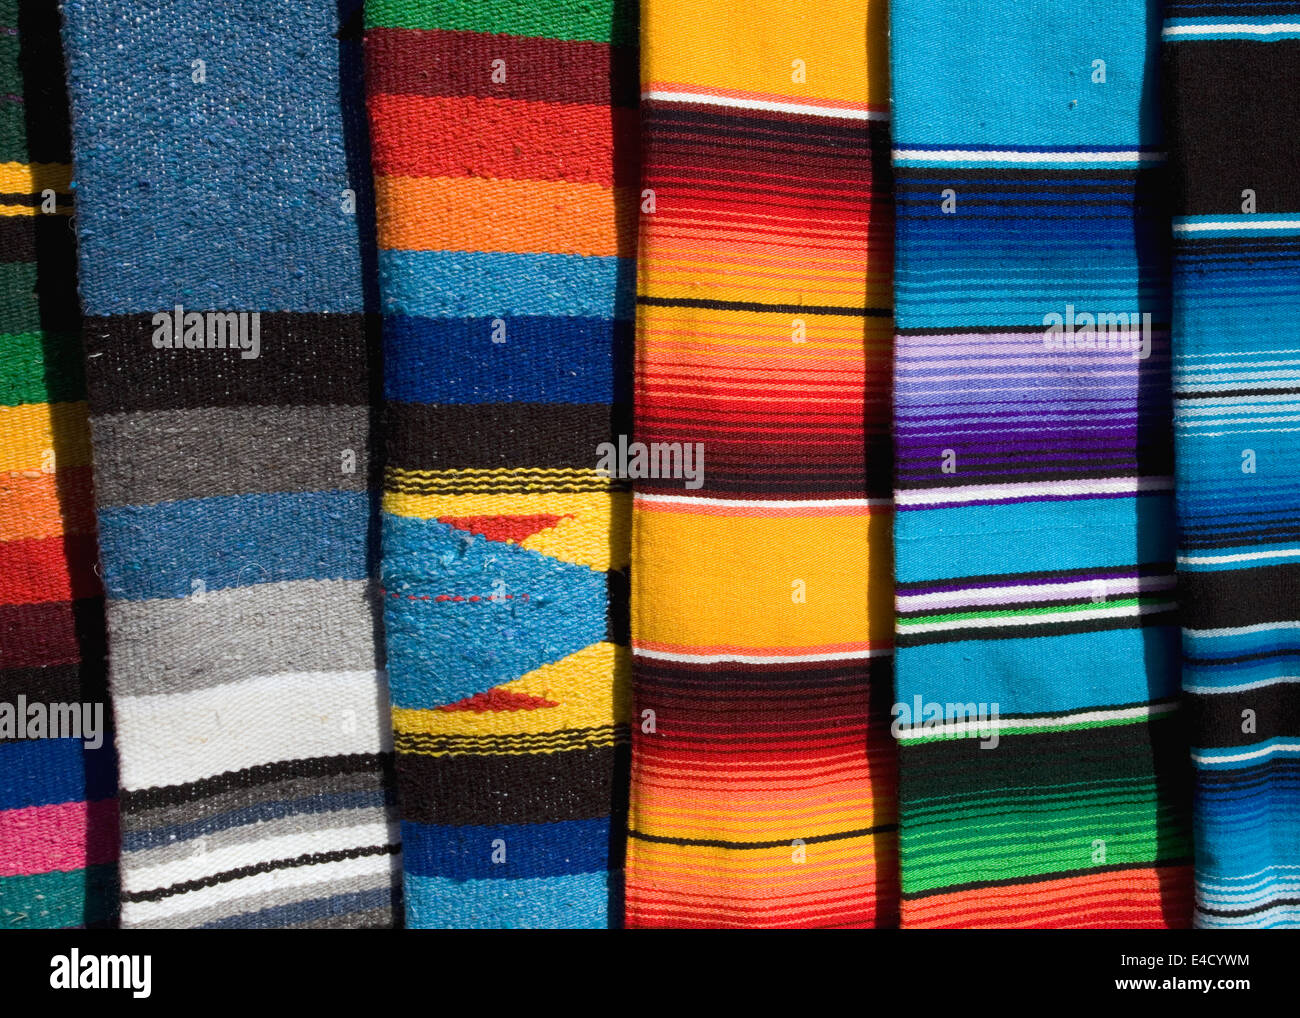 La ligne des couvertures aux couleurs audacieuses dans un décrochage Mazatlan, Mexique Banque D'Images